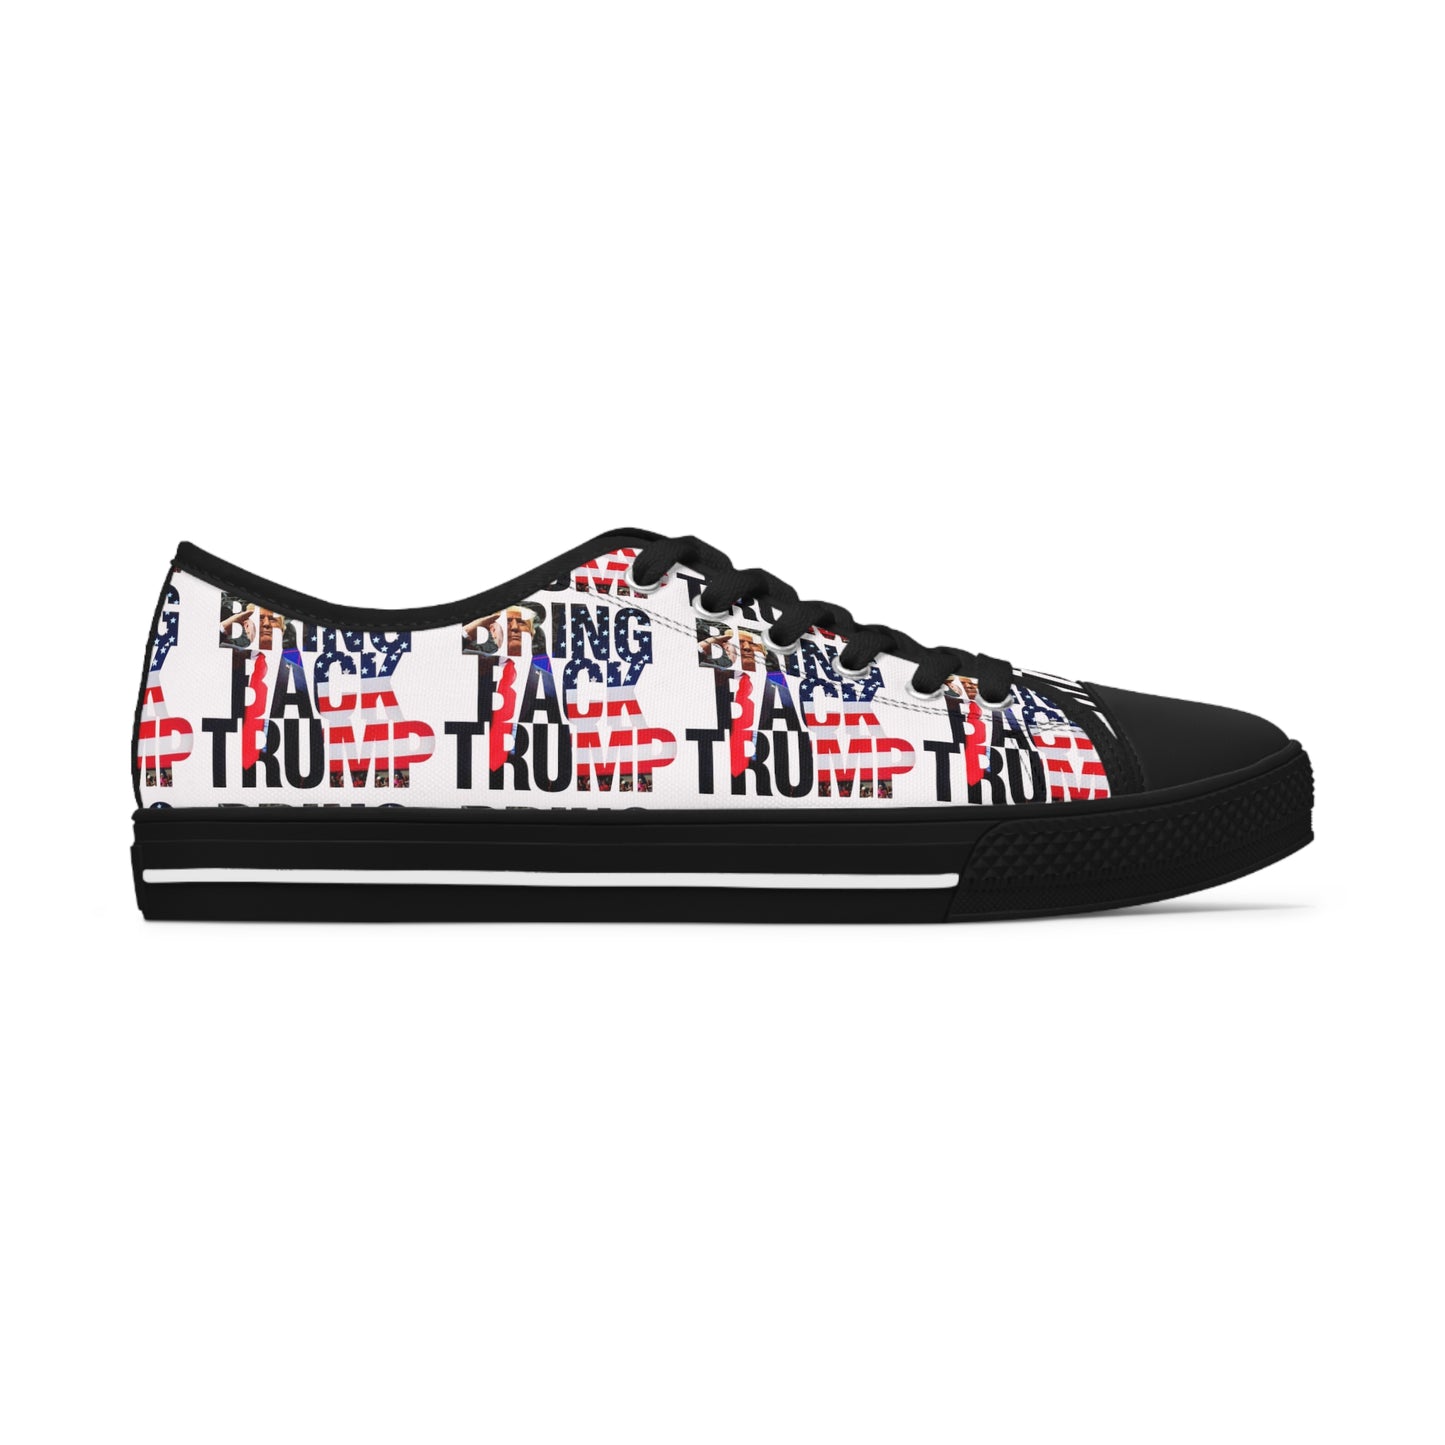 Bring Back Trump Weiße MAGA Low-Top-Sneaker für Damen mit Allover-Print